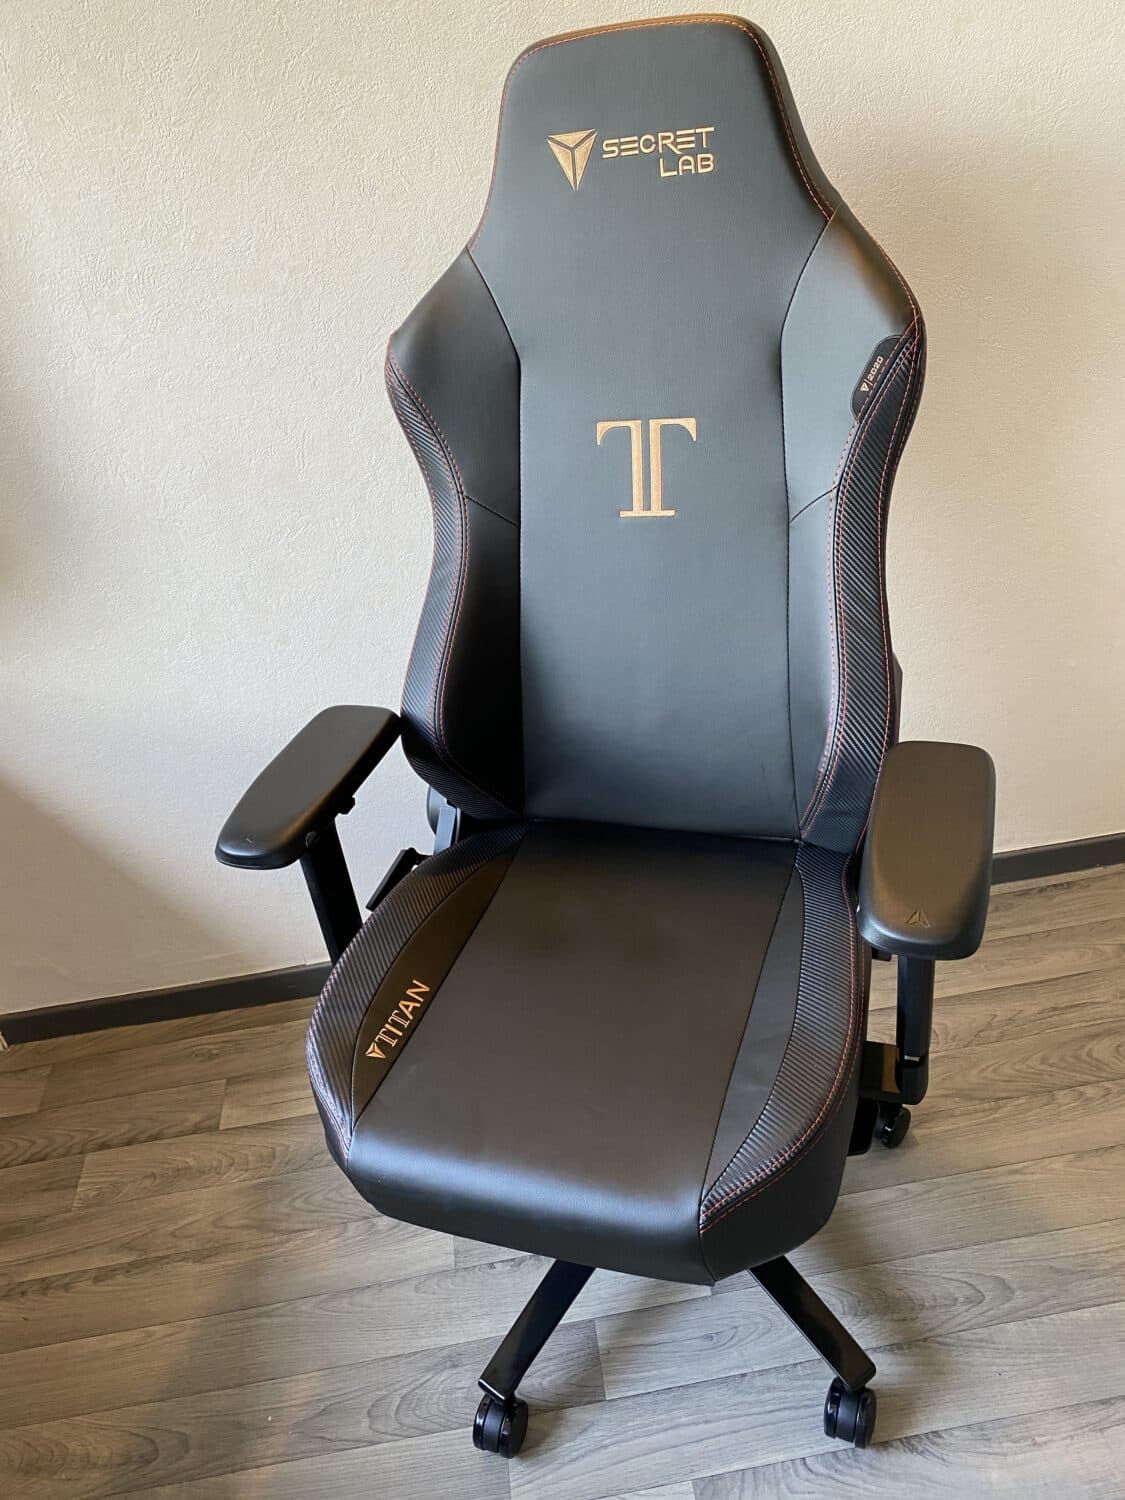 Test - Secretlab Titan : La chaise de bureau à l'ergonomie parfaite